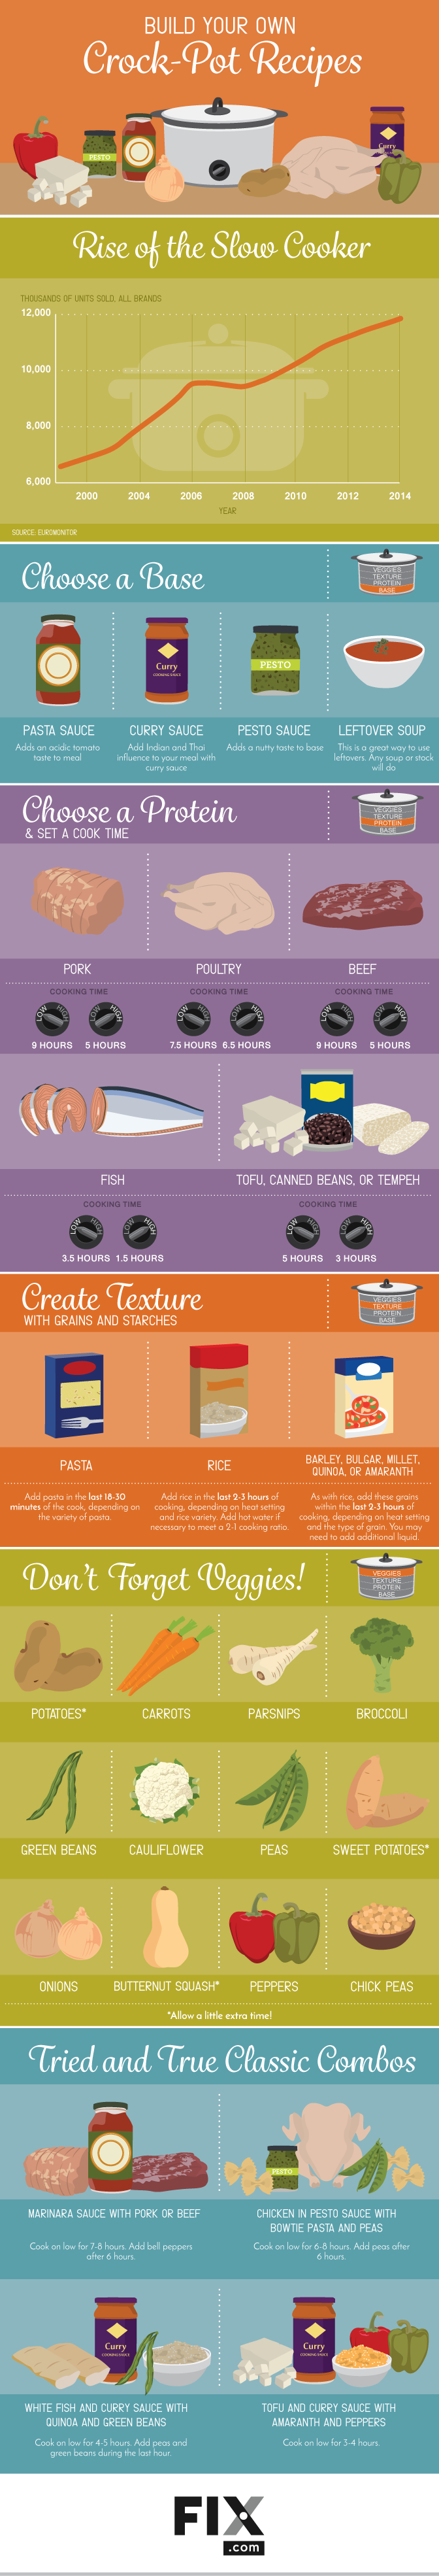 Build Your Own Crock Pot Recipes – Fix.com